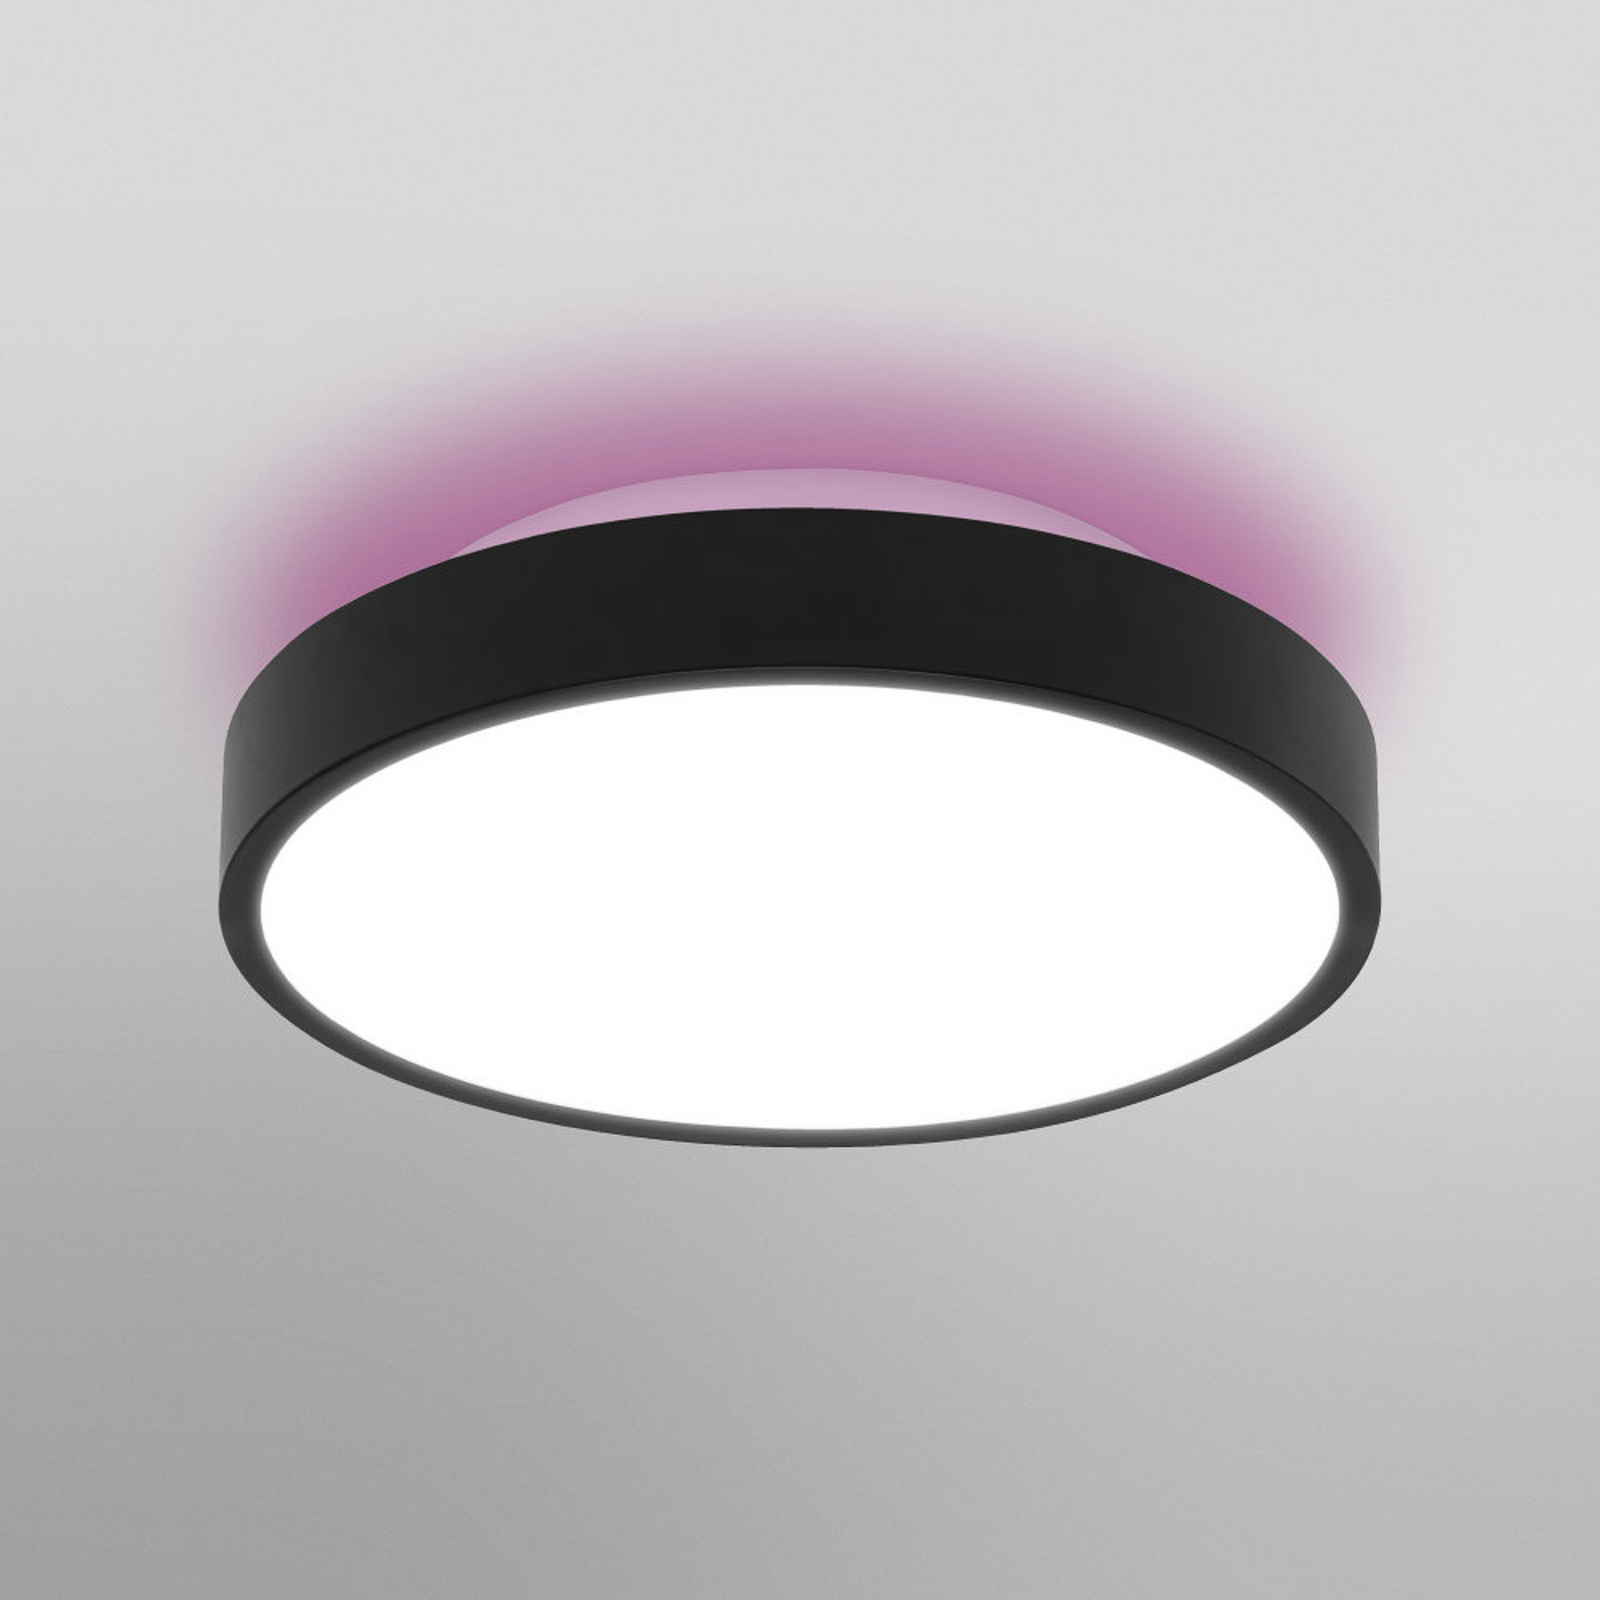 LEDVANCE SMART+ WiFi Orbis Backlight negro Ø35cm